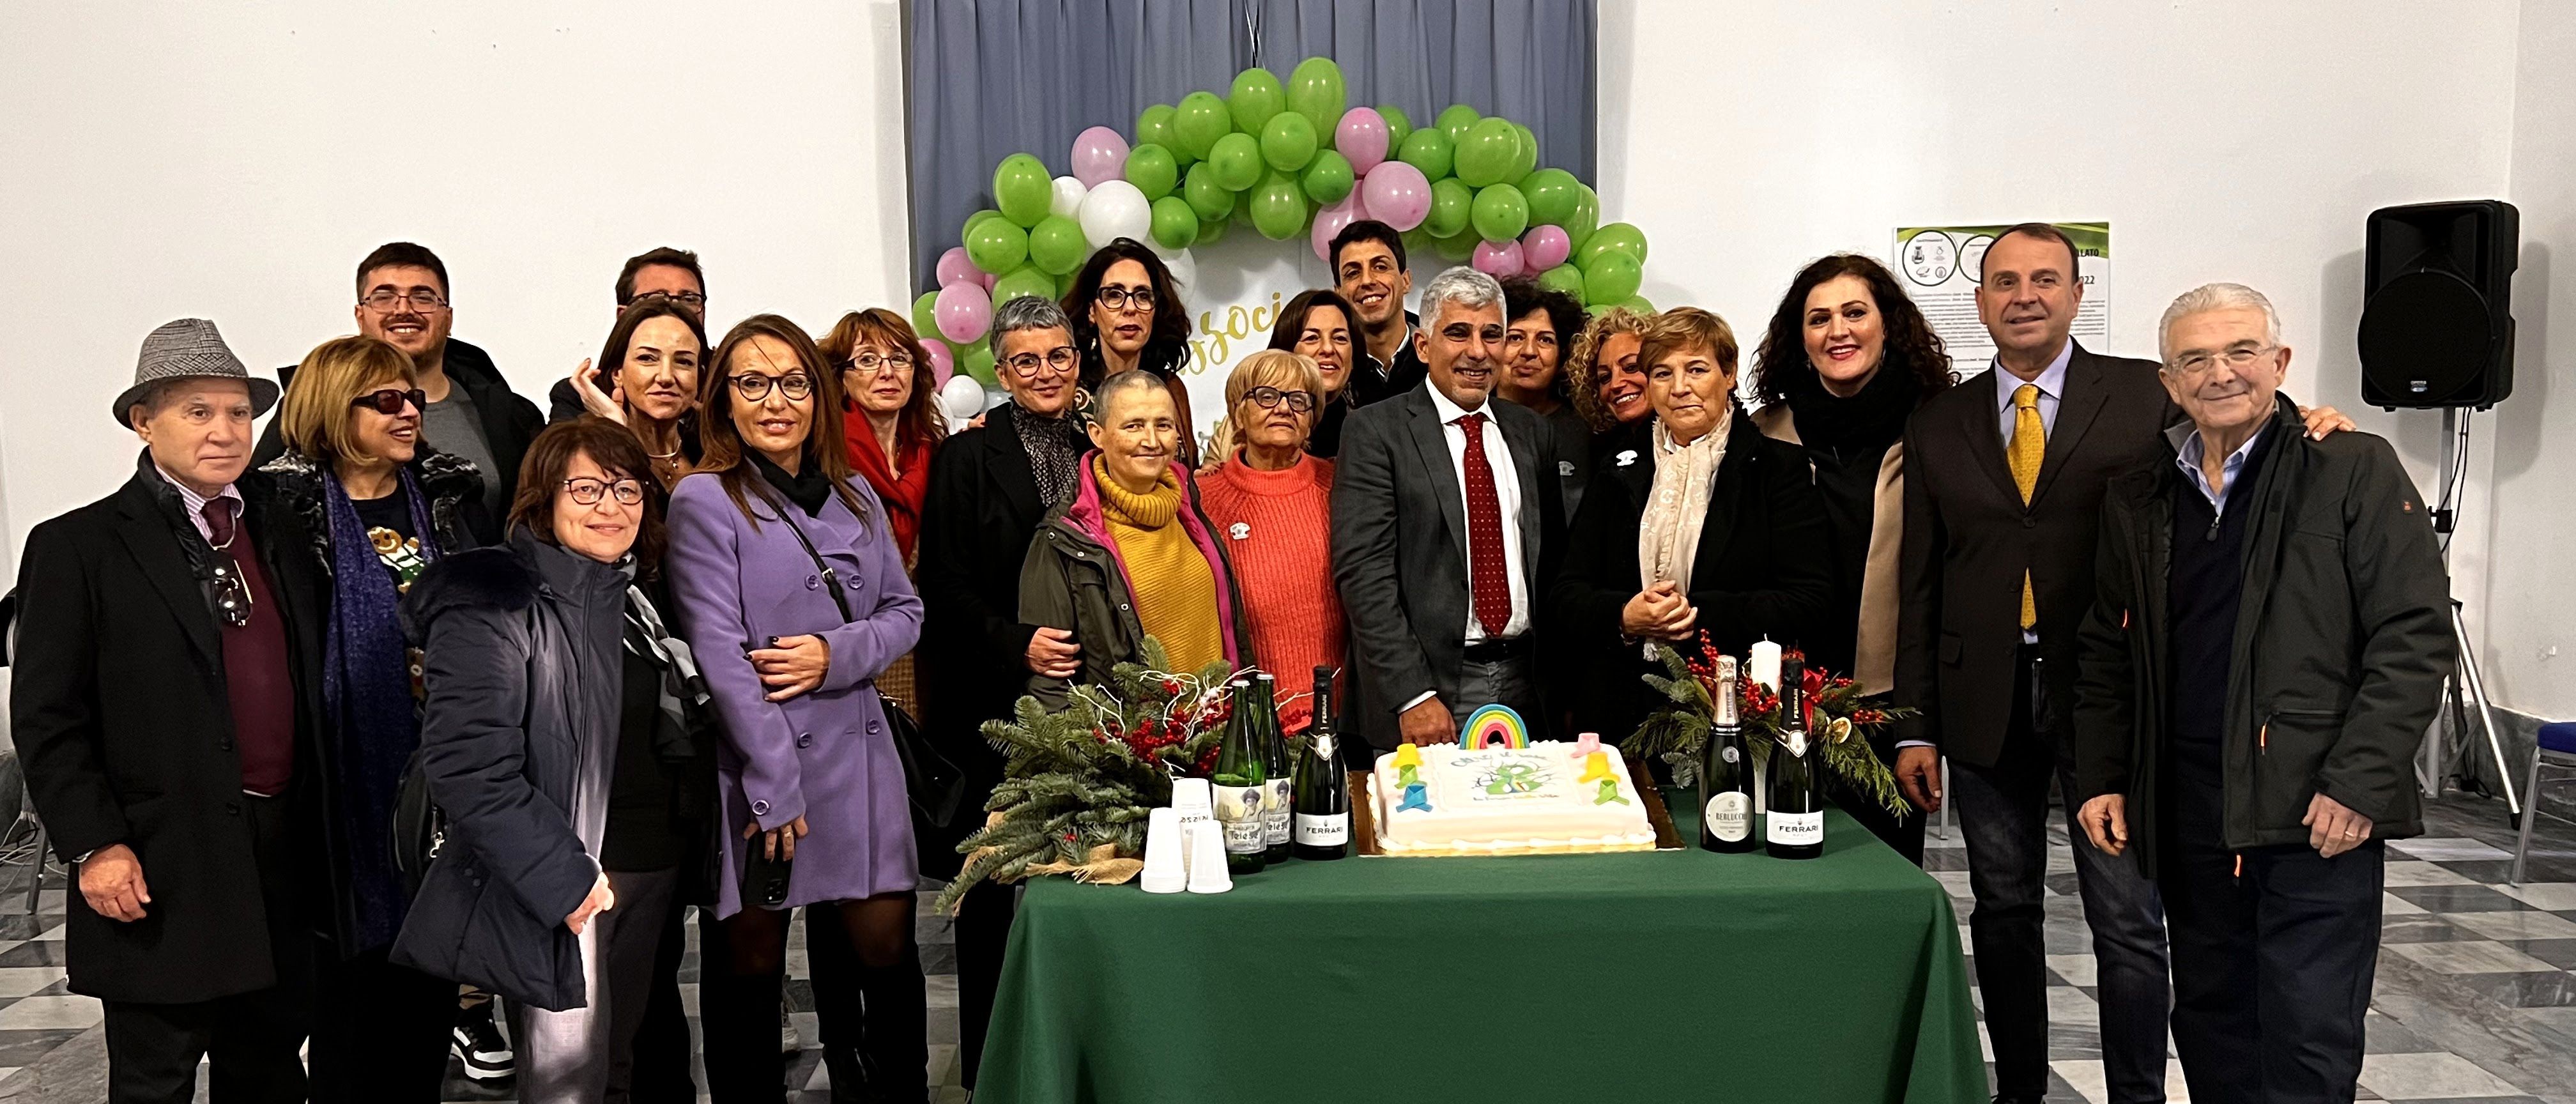 Foto degli iscritti e volontari dell'associazione Oltre il rosa la Forza della Vita in posa davanti ad una torta